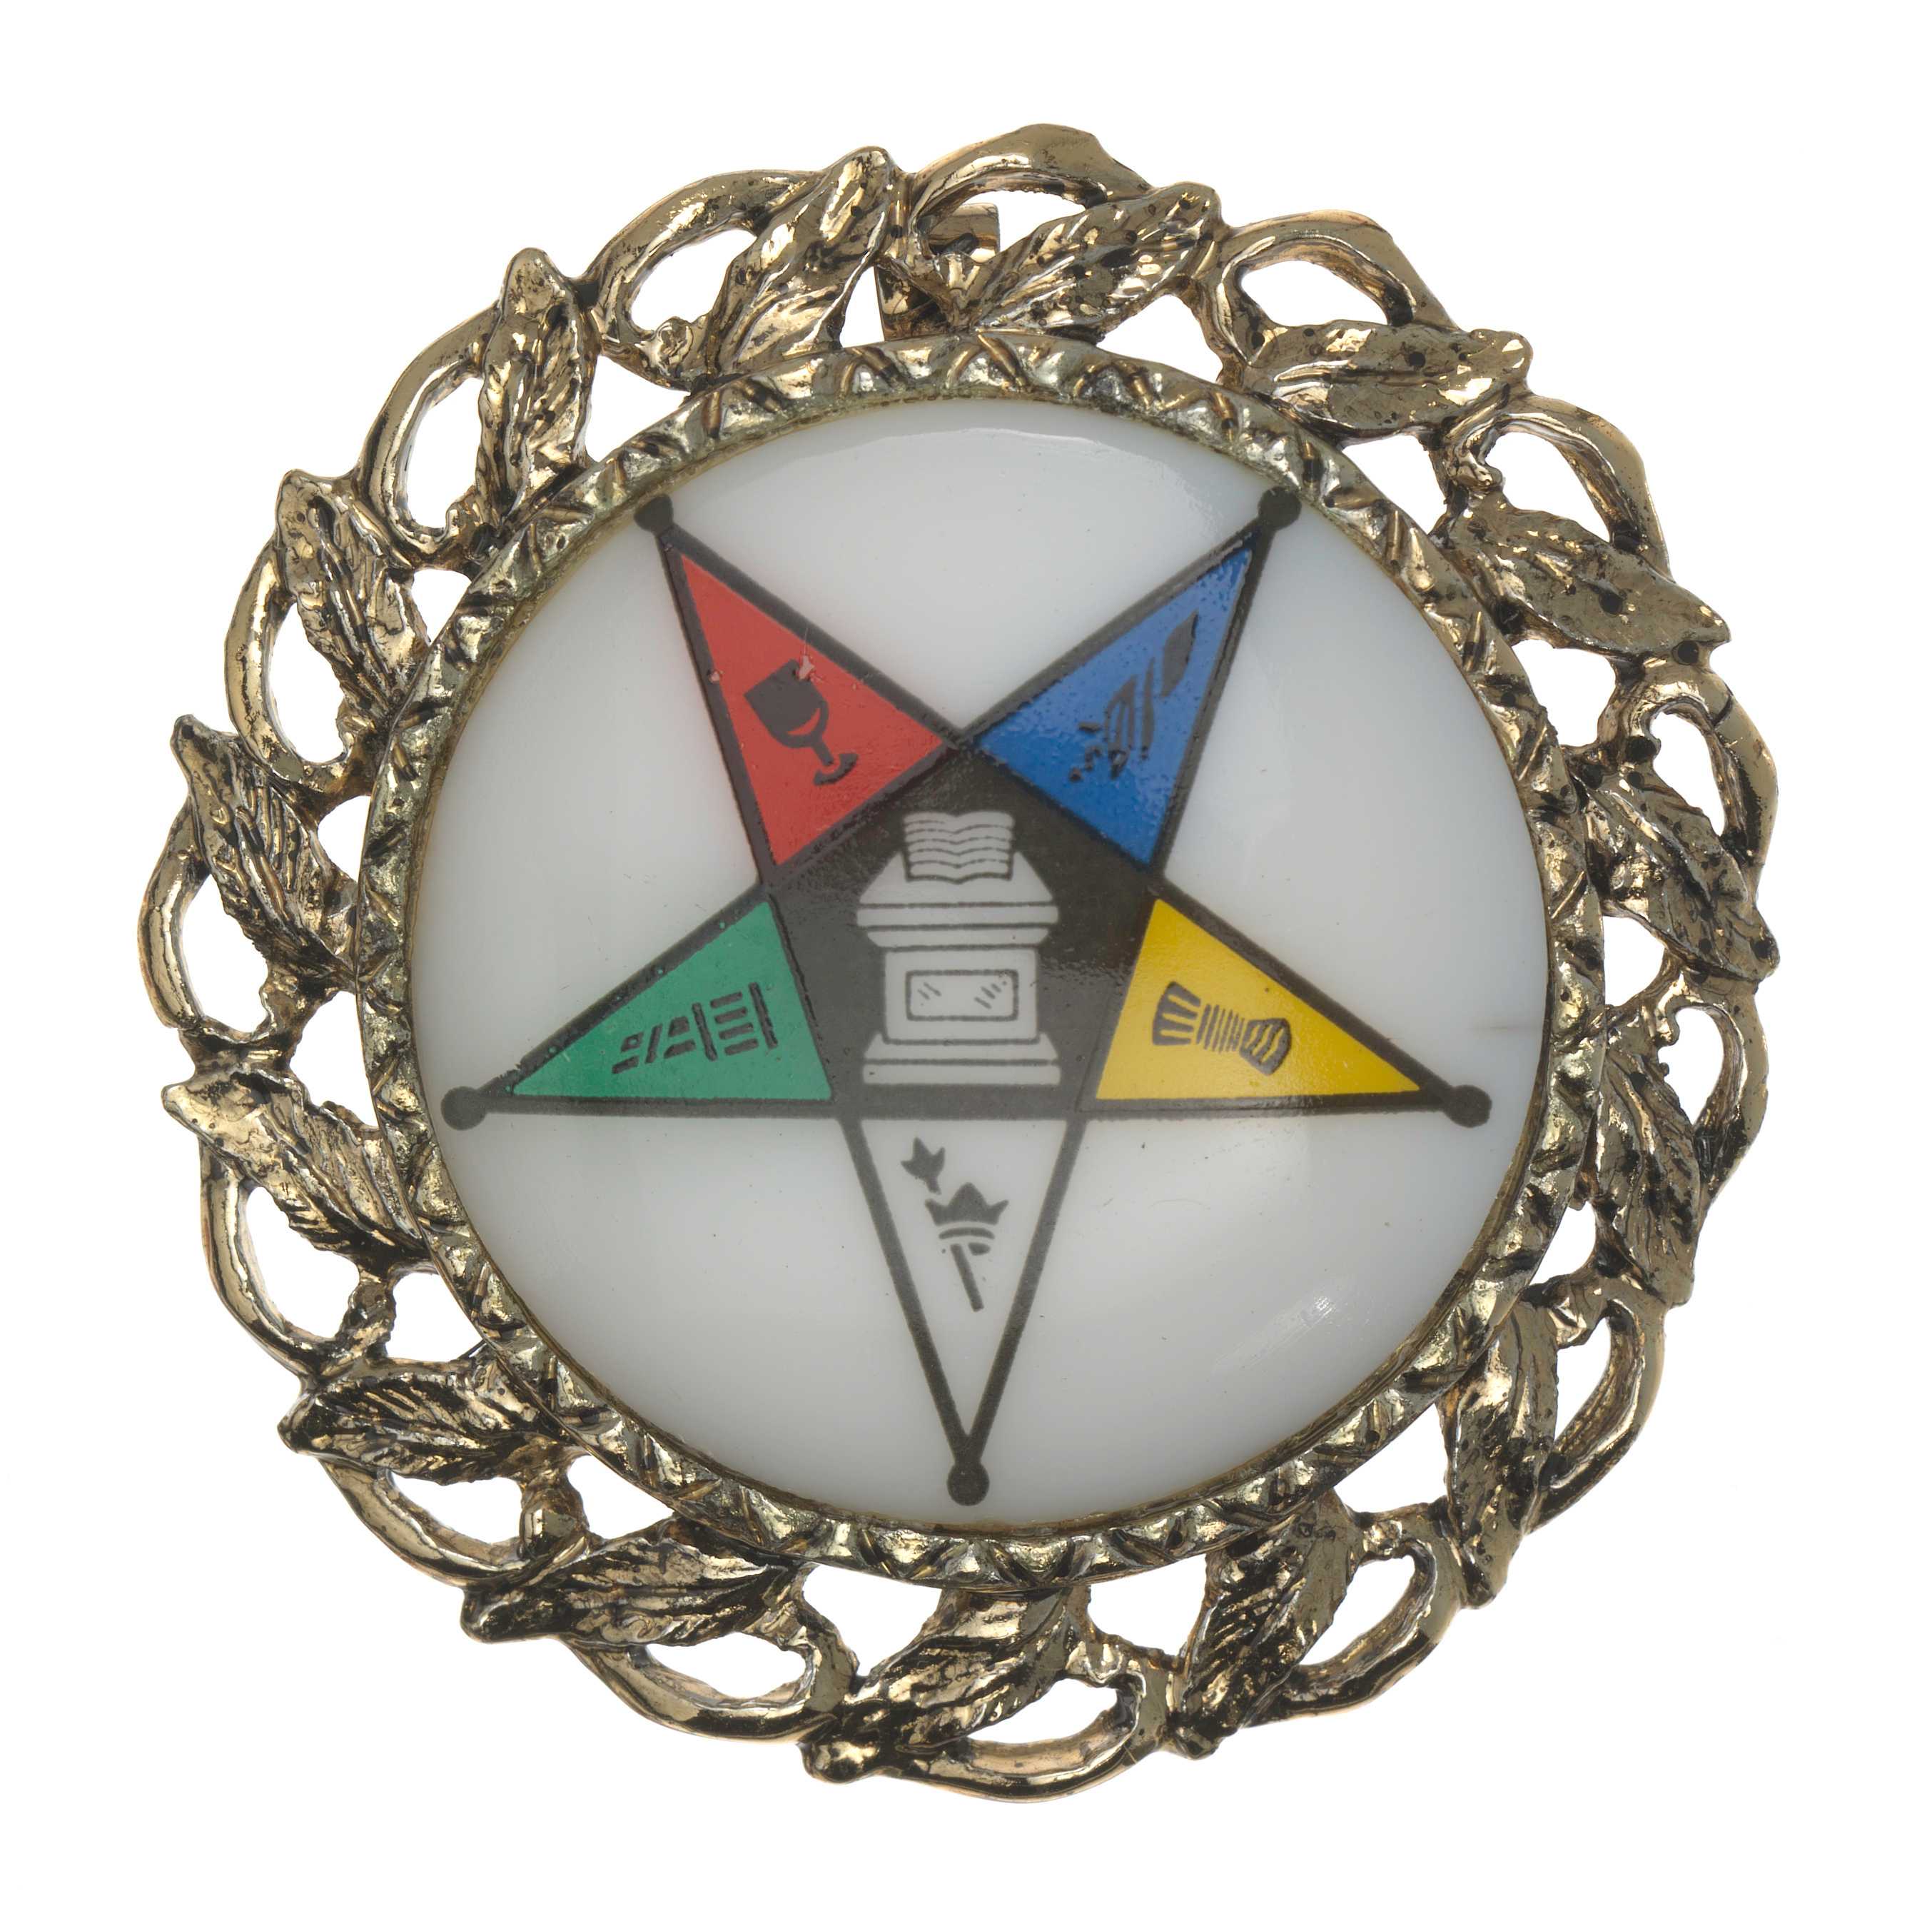 A circular metal pendant with a ceramic center.